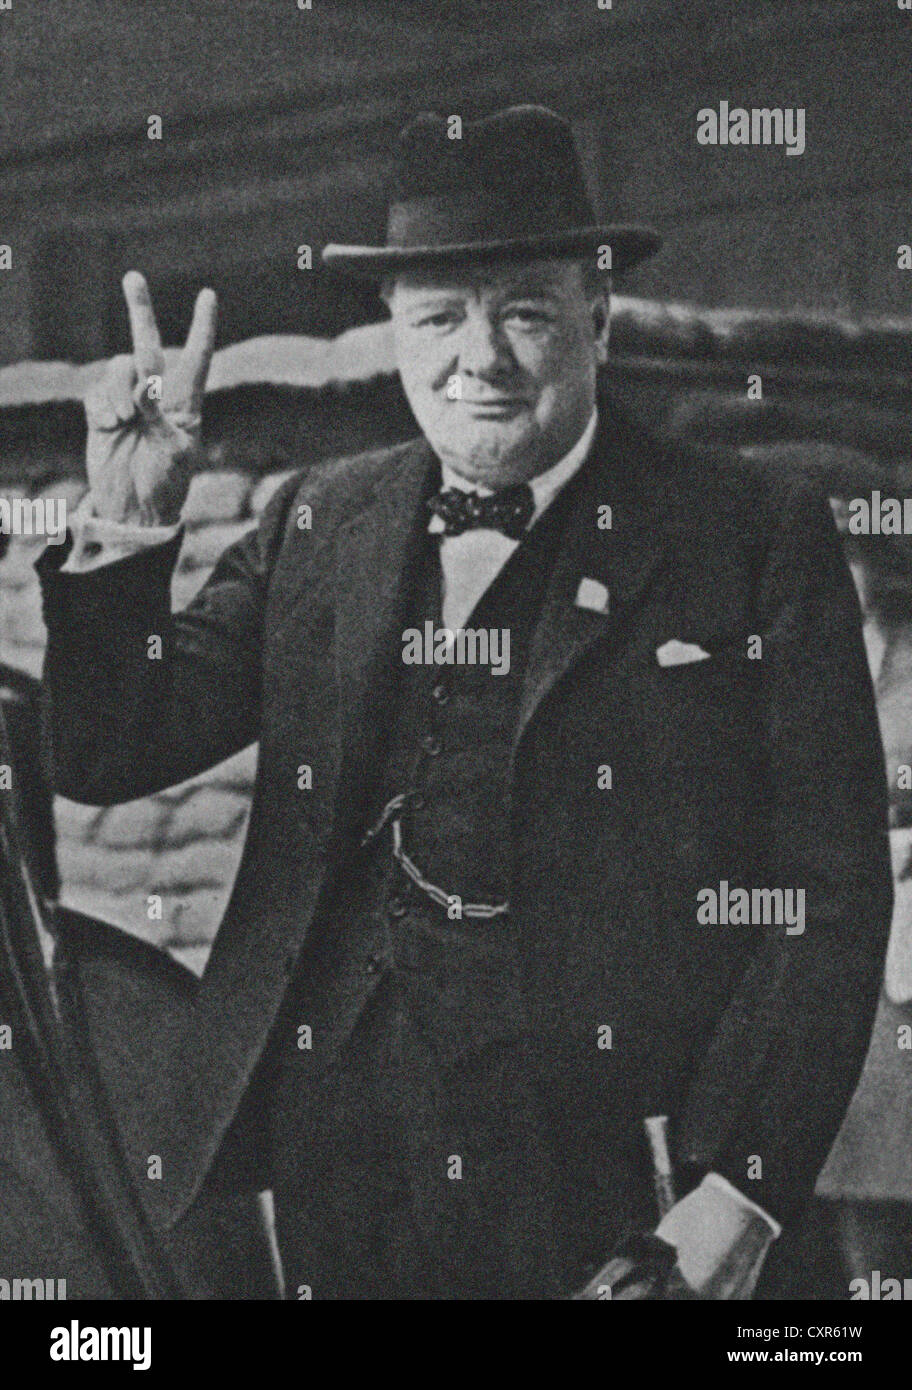 Britischen Führer Winston Churchill mit seiner berühmten V für Victory-Zeichen. Bild aus dem Archiv des Presse-Portrait-Service (ehemals Porträt Pressebüro) 1941 Bild Stockfoto